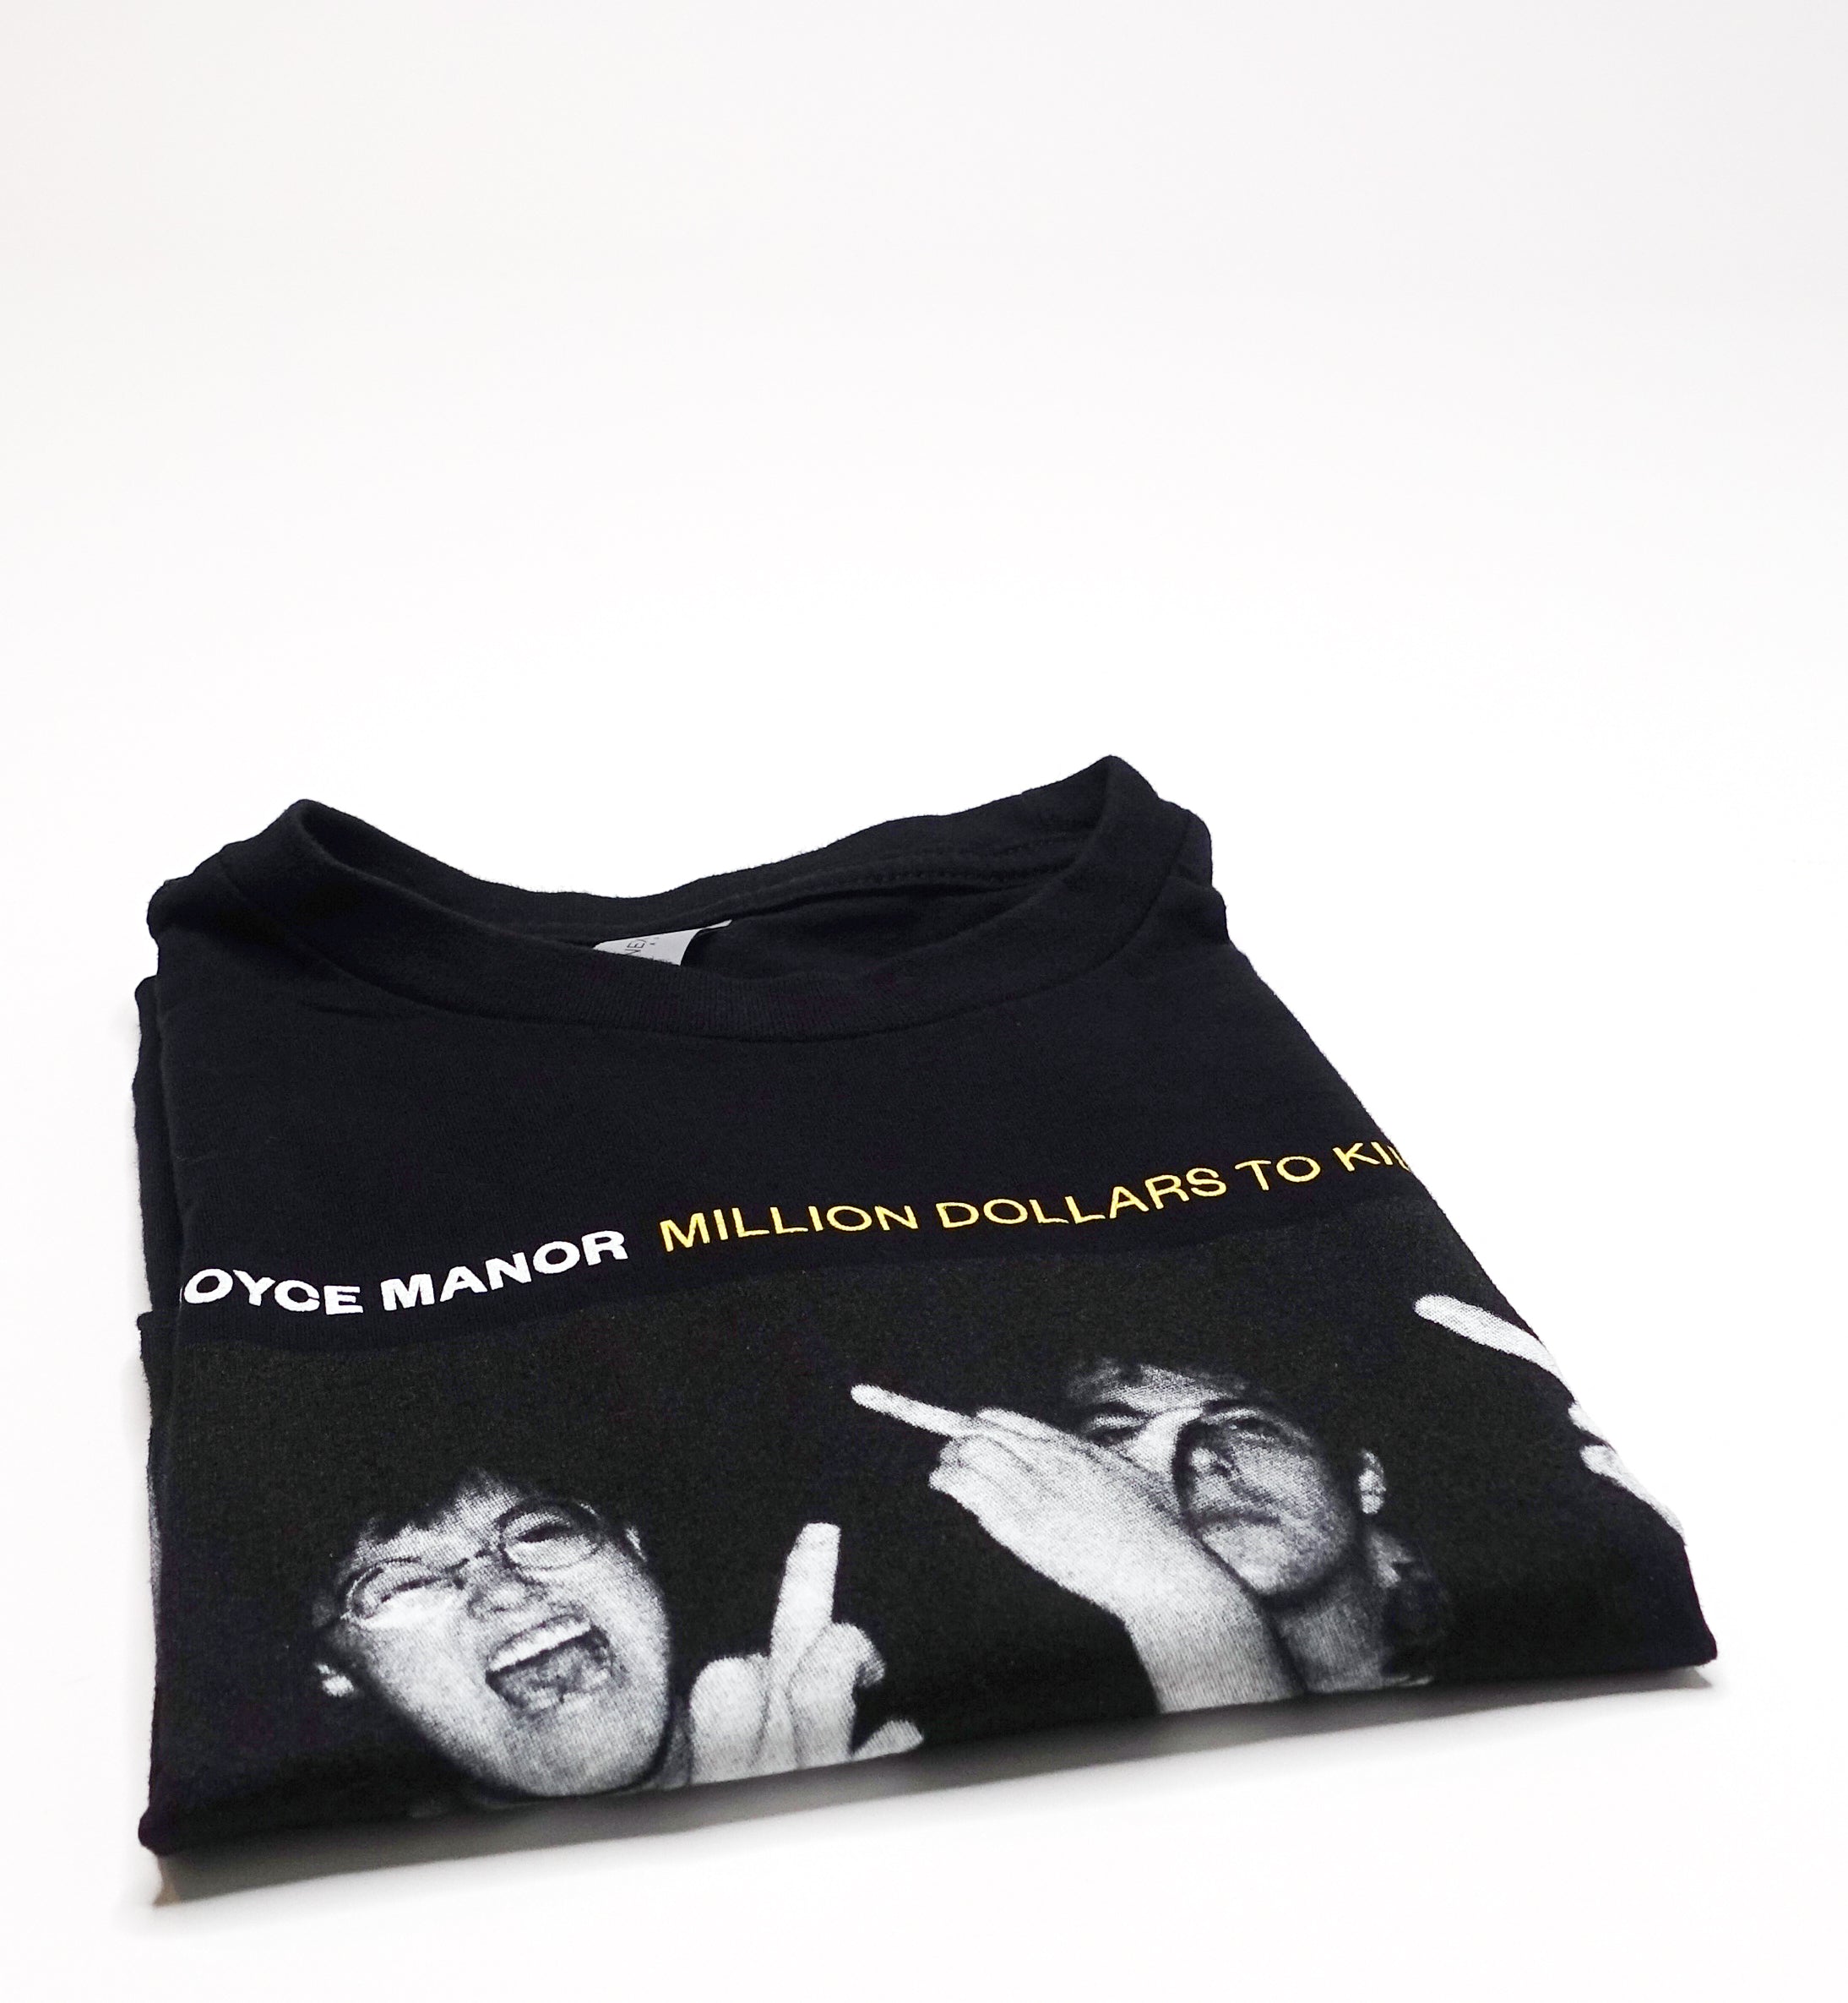 Joyce Manor – Million Dollars To Kill Me Shirt Size Small